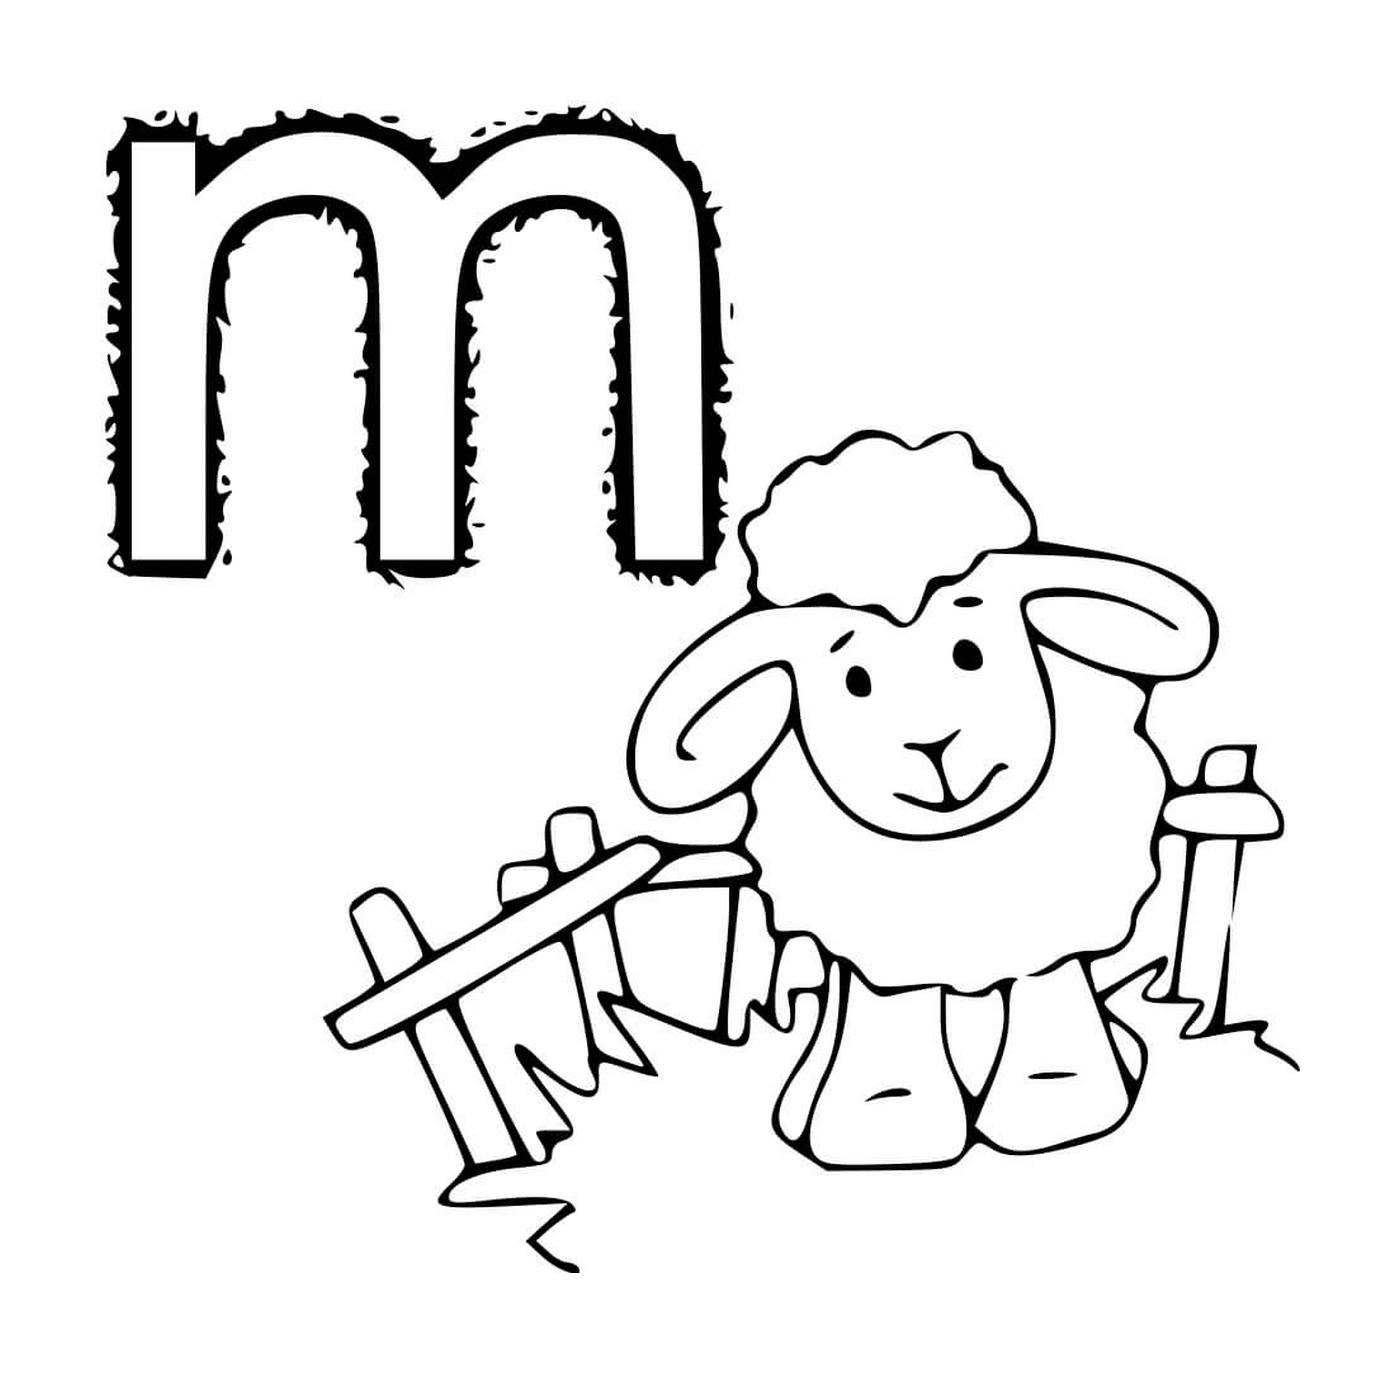  Pecore vicino alla recinzione, lettera M 